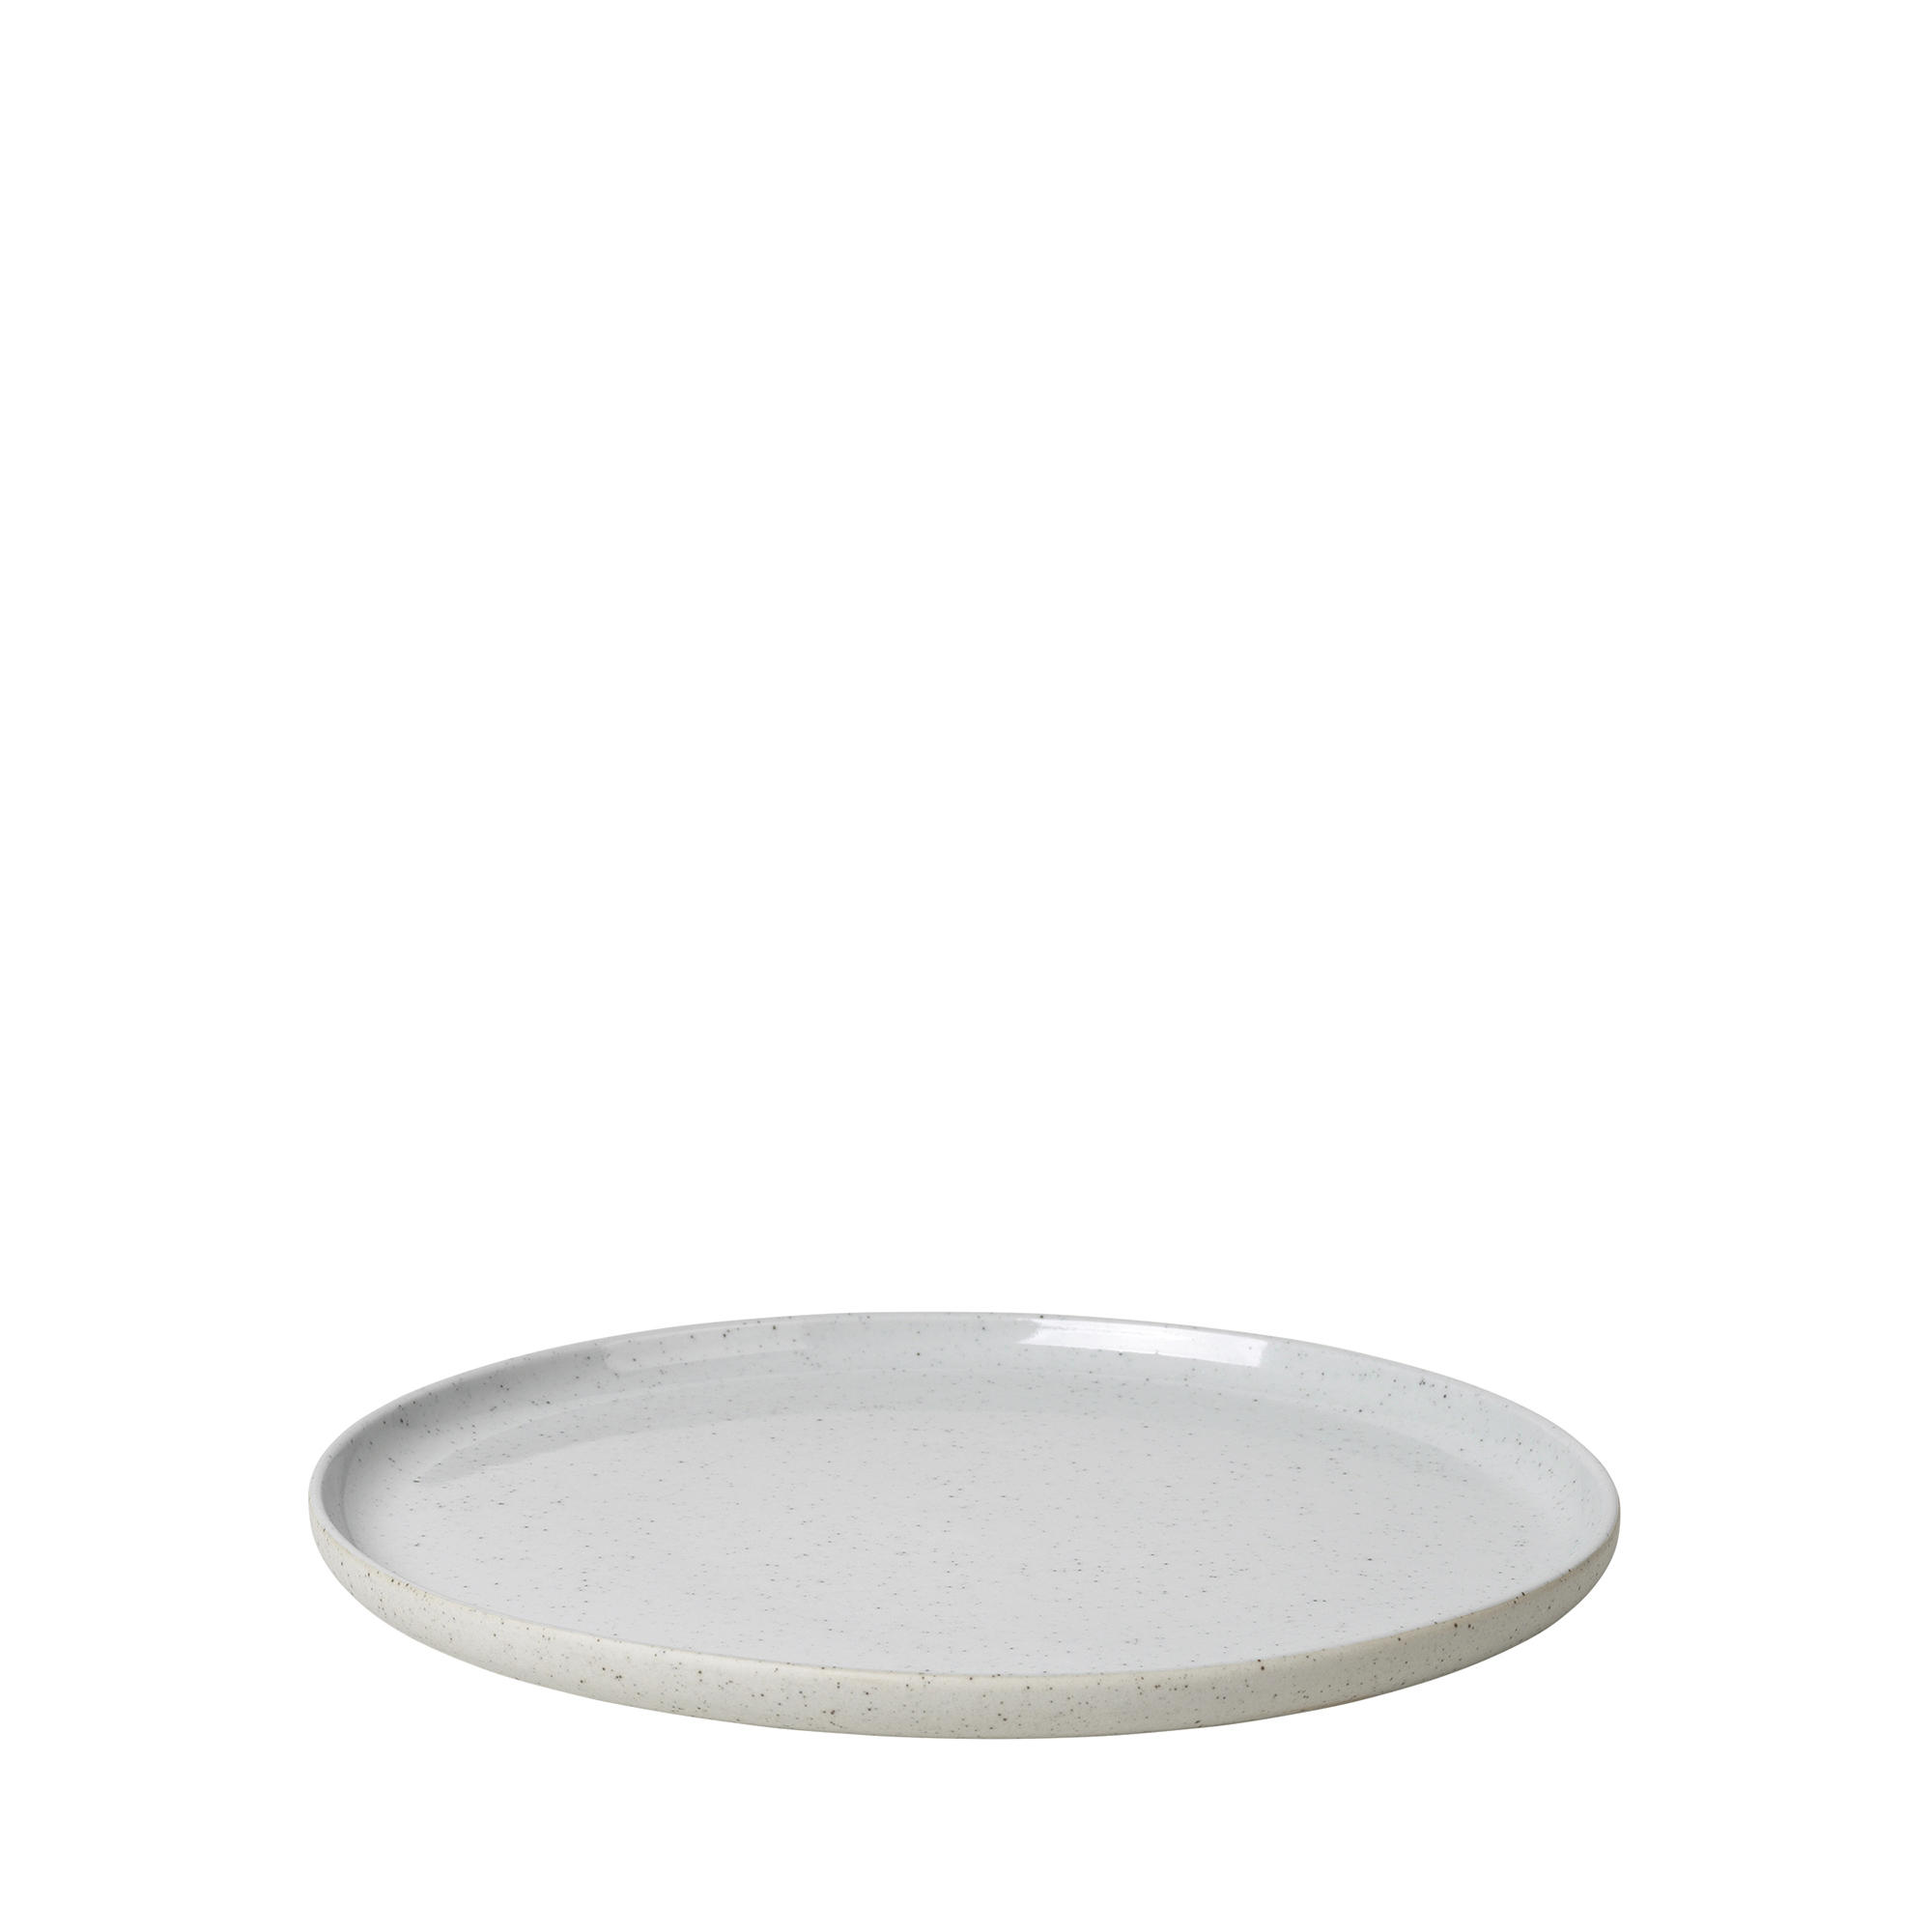  DESSERTTELLER  rund  - Beige/Grau, Design, Keramik (21/1,3cm) - Blomus